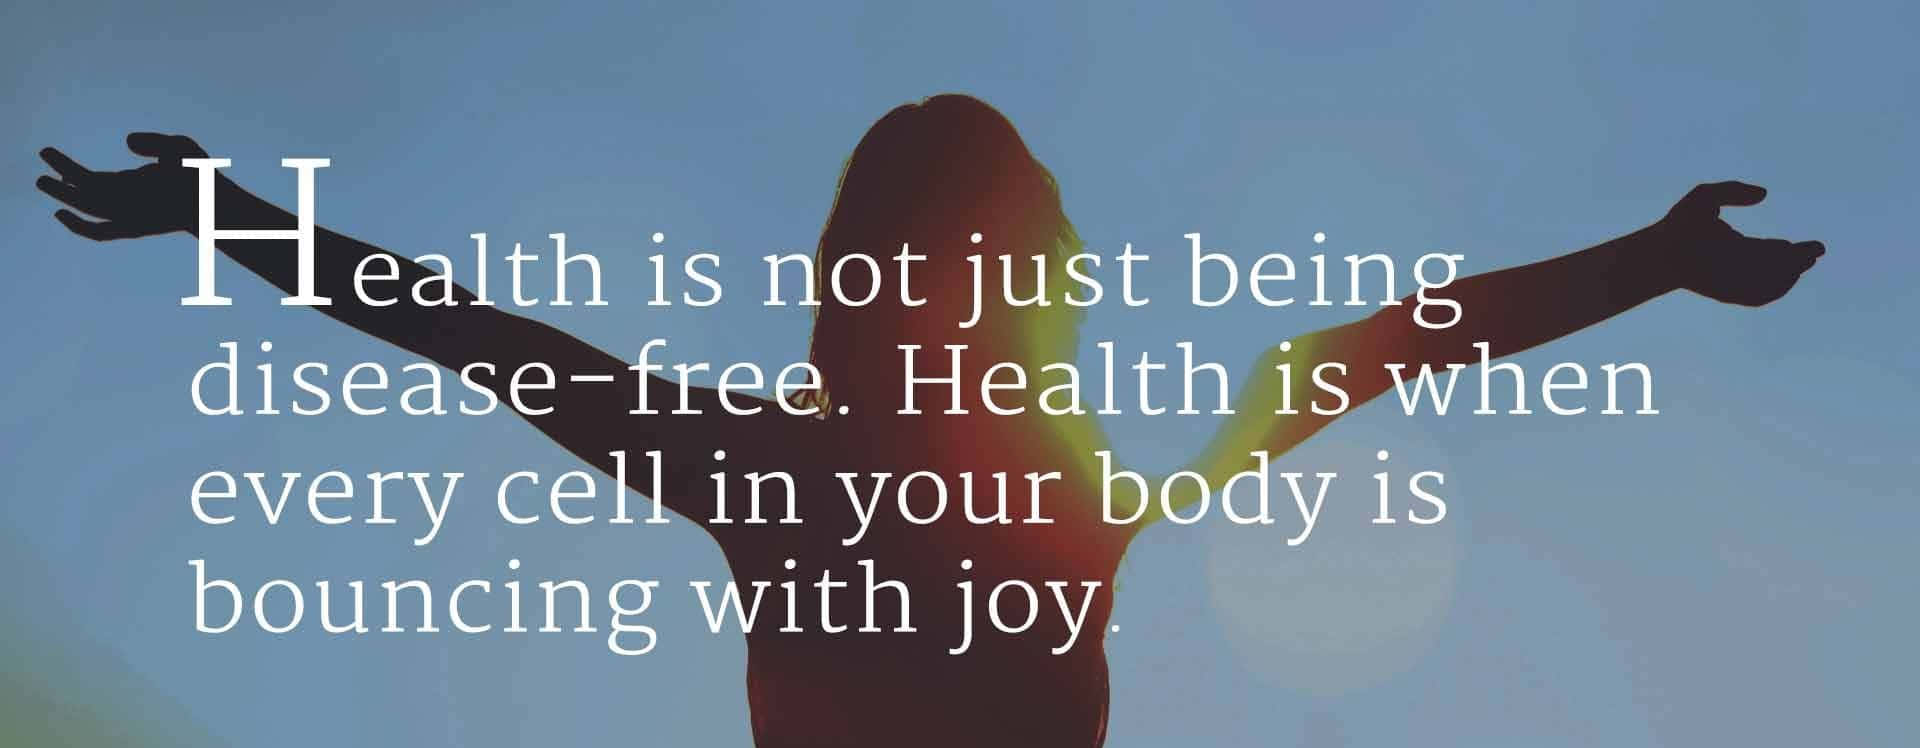 Download Joyful Health Inspirational Quote Wallpaper | Wallpapers.com